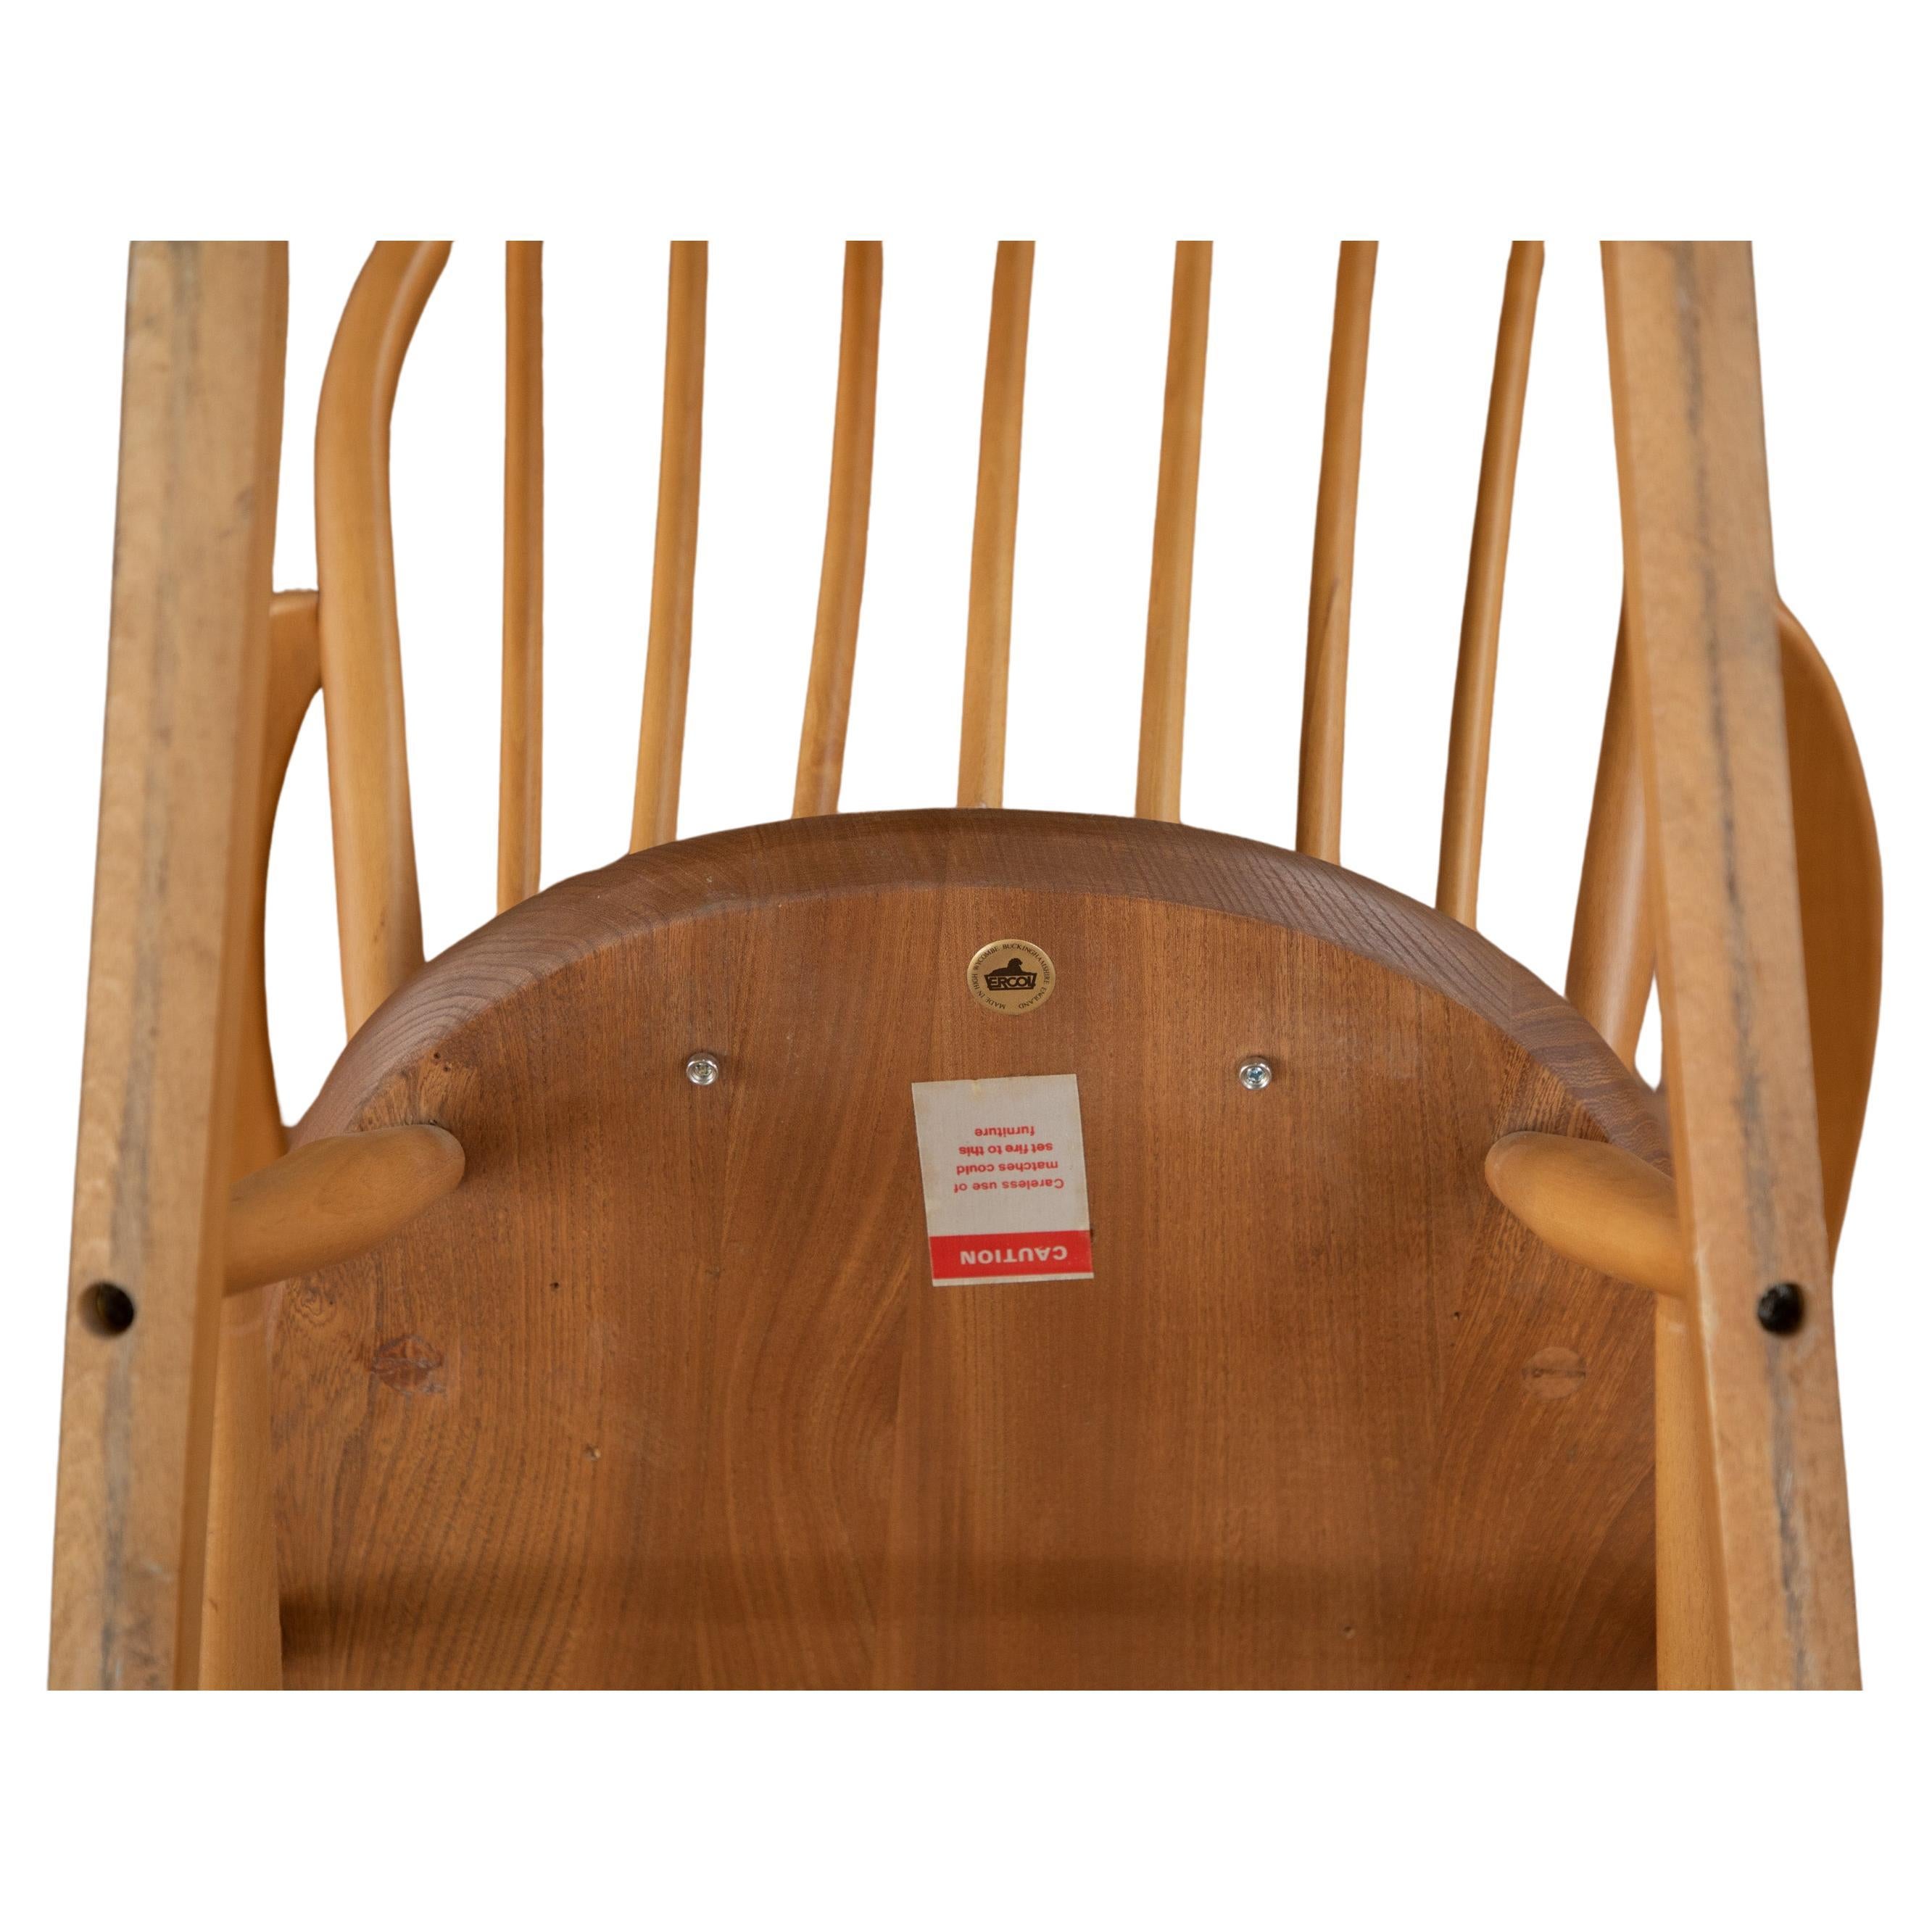 Klassischer Ercol Wippstuhl, niedrig sitzender Pflegesessel. 
Ercol No.290/F182 Windsor Utility Range, hergestellt ca.. 1952

 Der Stuhl hat eine gebogene, 6-spindlige Rückenlehne aus Buchenholz. Die D-förmige Sitzfläche des Stuhls ist aus massiver